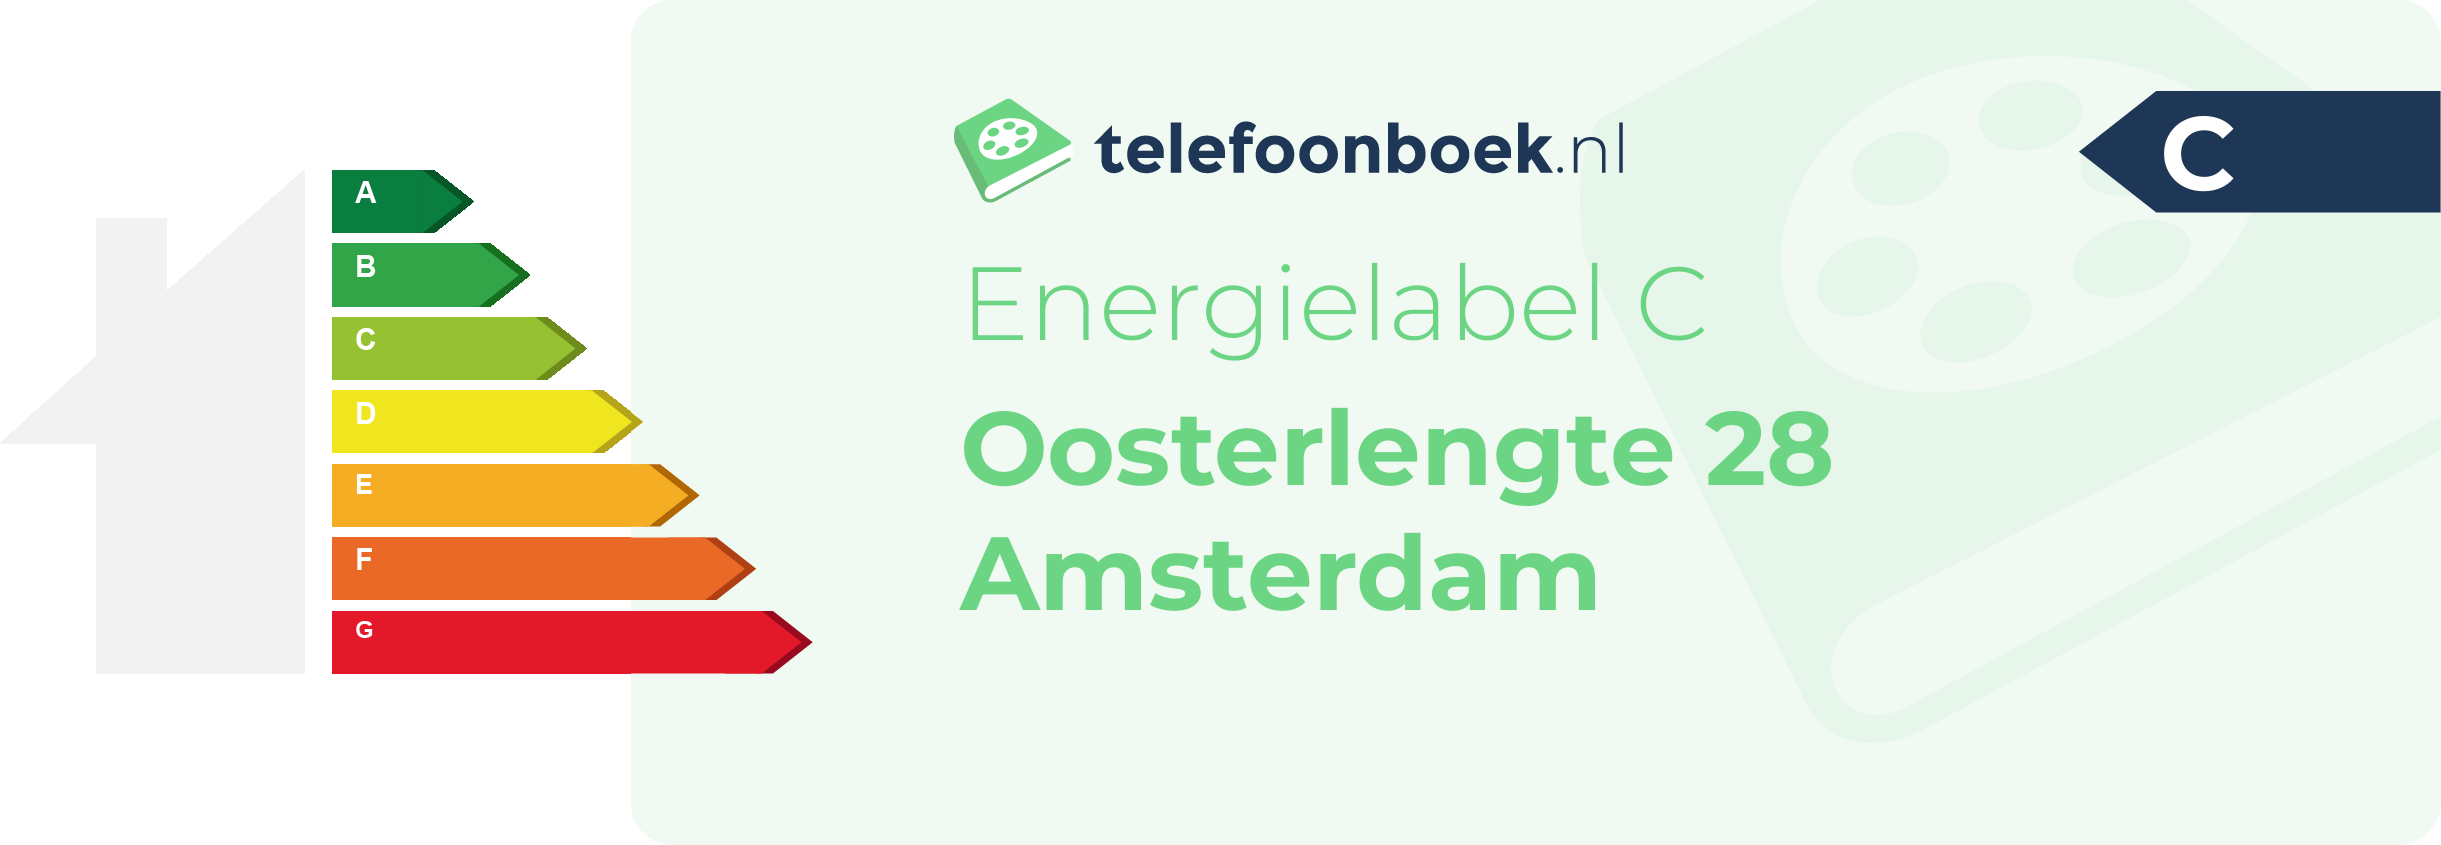 Energielabel Oosterlengte 28 Amsterdam